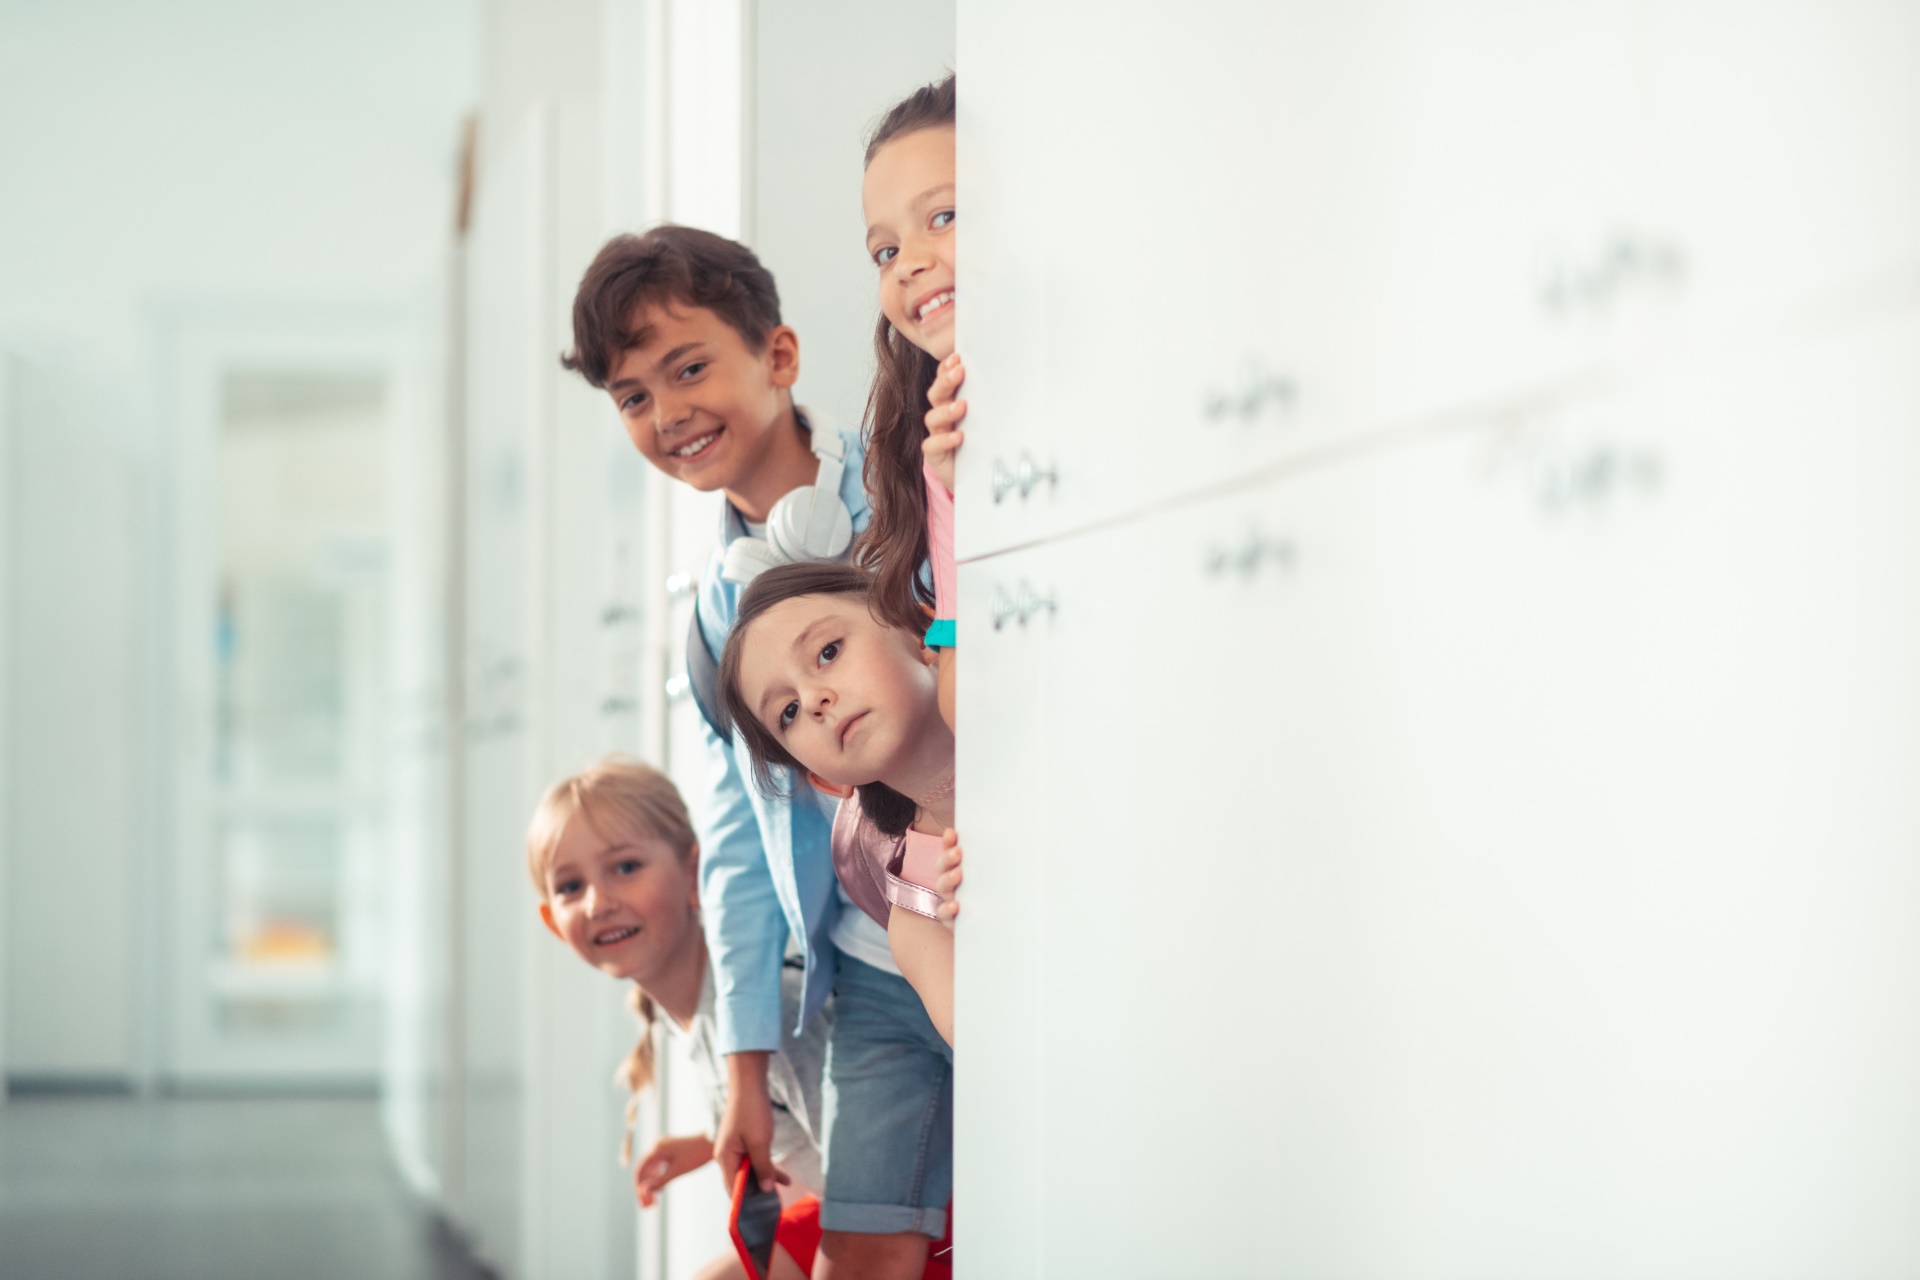 Chłopiec i dziewczęta uśmiechnięci wychylają się zza ściany podczas przerwy w szkole.